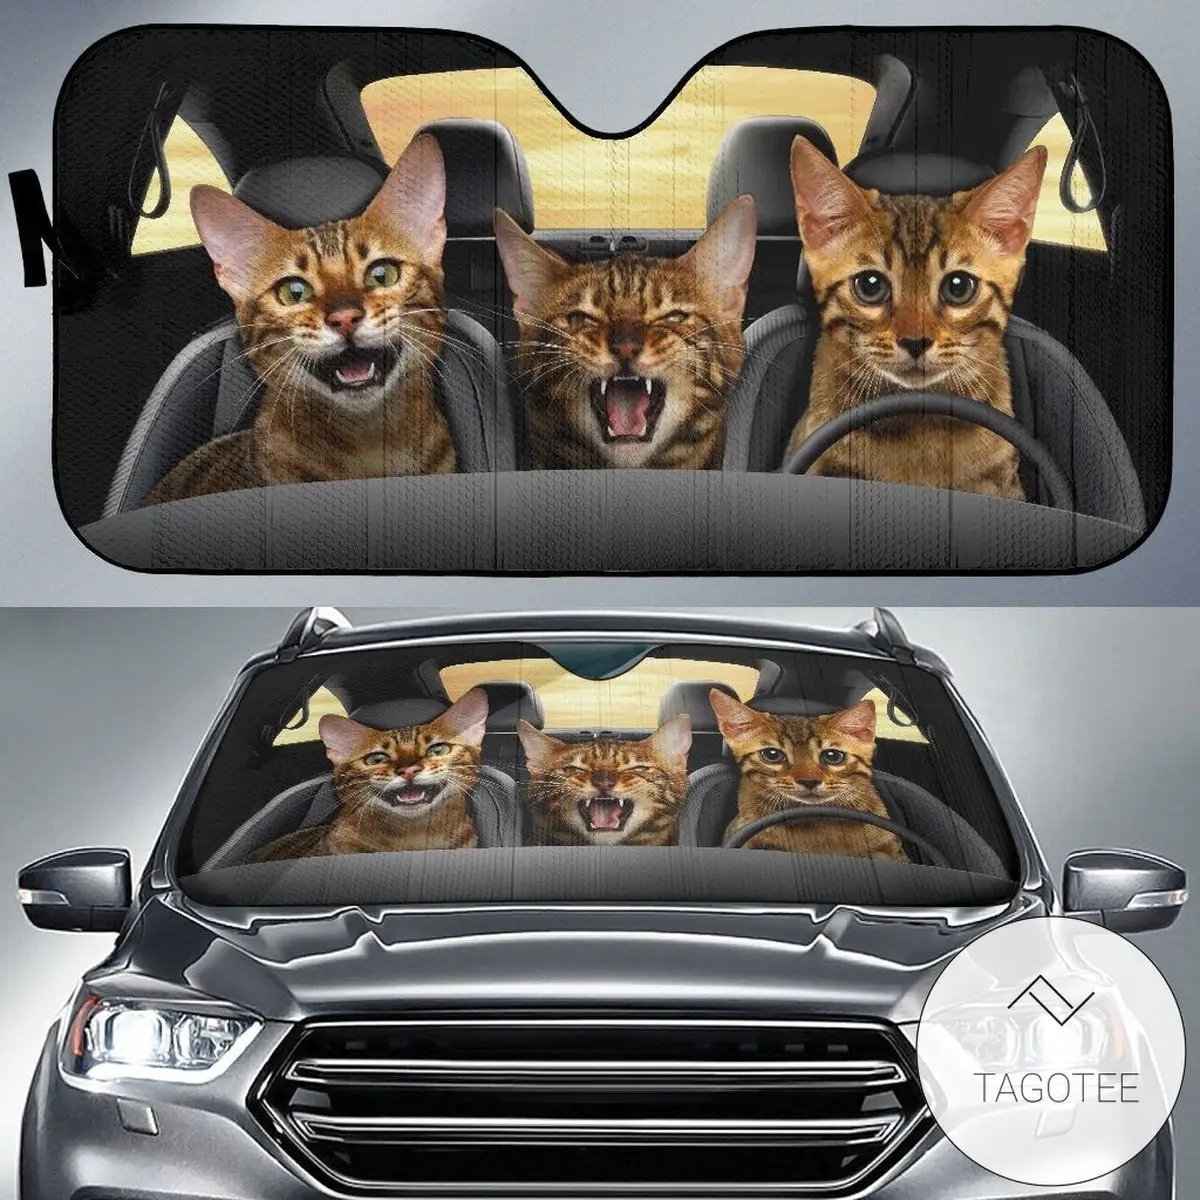 סוואנה חתול רכב שמש צל, סוואנה חתול שמשה קדמית, חתולים משפחה שמשיה, חתול אביזרי רכב, רכב קישוט, מתנה עבור אבא, מו